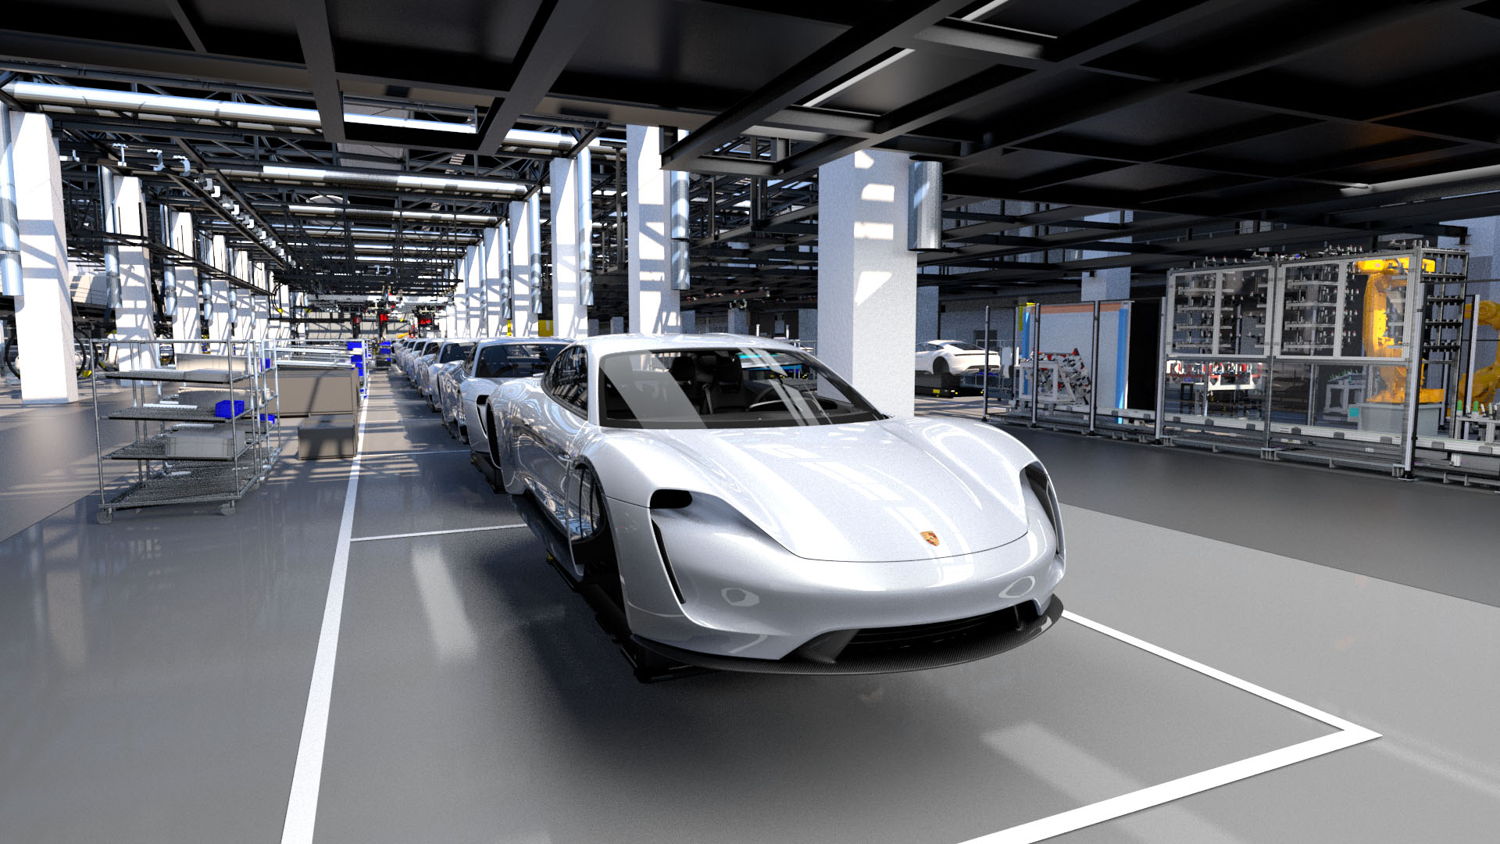  Una mirada a la Producción Porsche 4.0